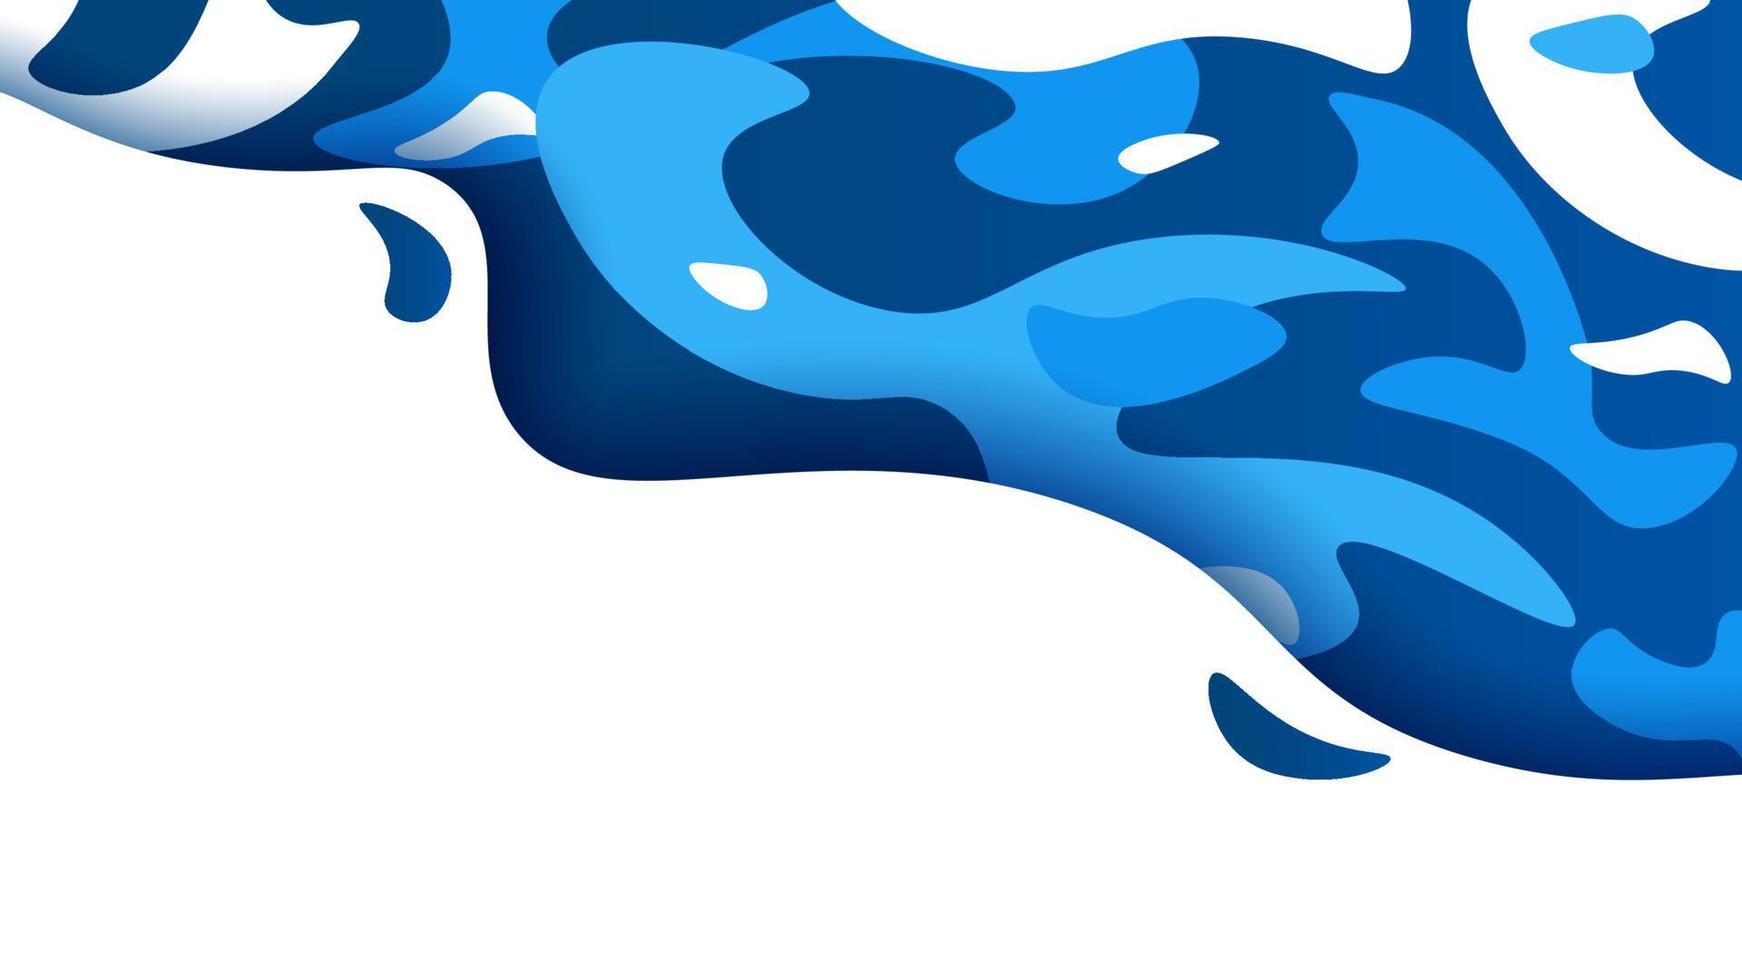 gradiente futurista flujo de onda azul aislado sobre fondo blanco. Colorido azul, agitando, salpicaduras de líquido, manchas abstractas de agua o ilustración de vector de fondo de estanque